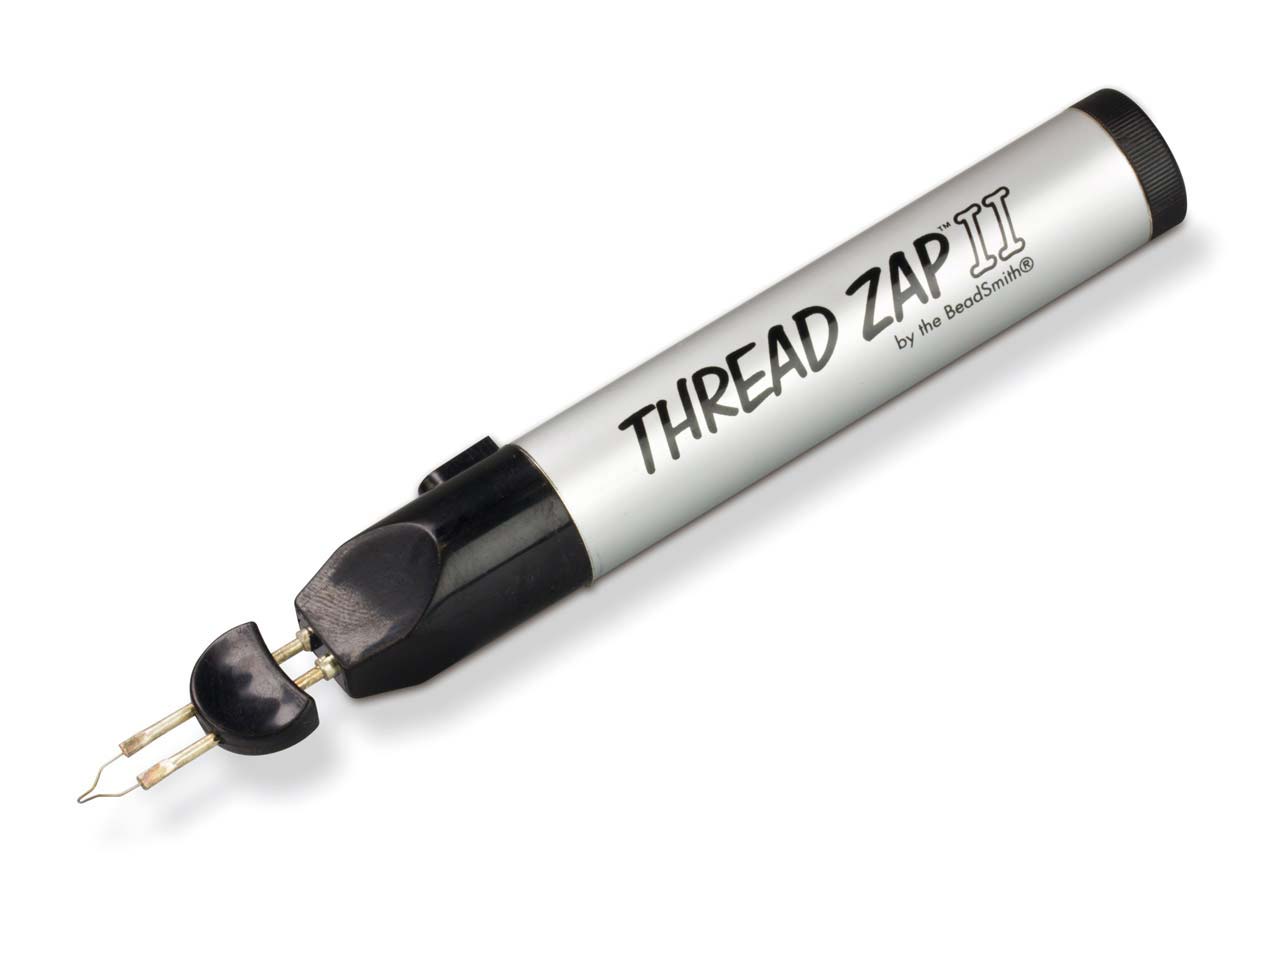 Beadsmith Thread Zap II - Thread Burner